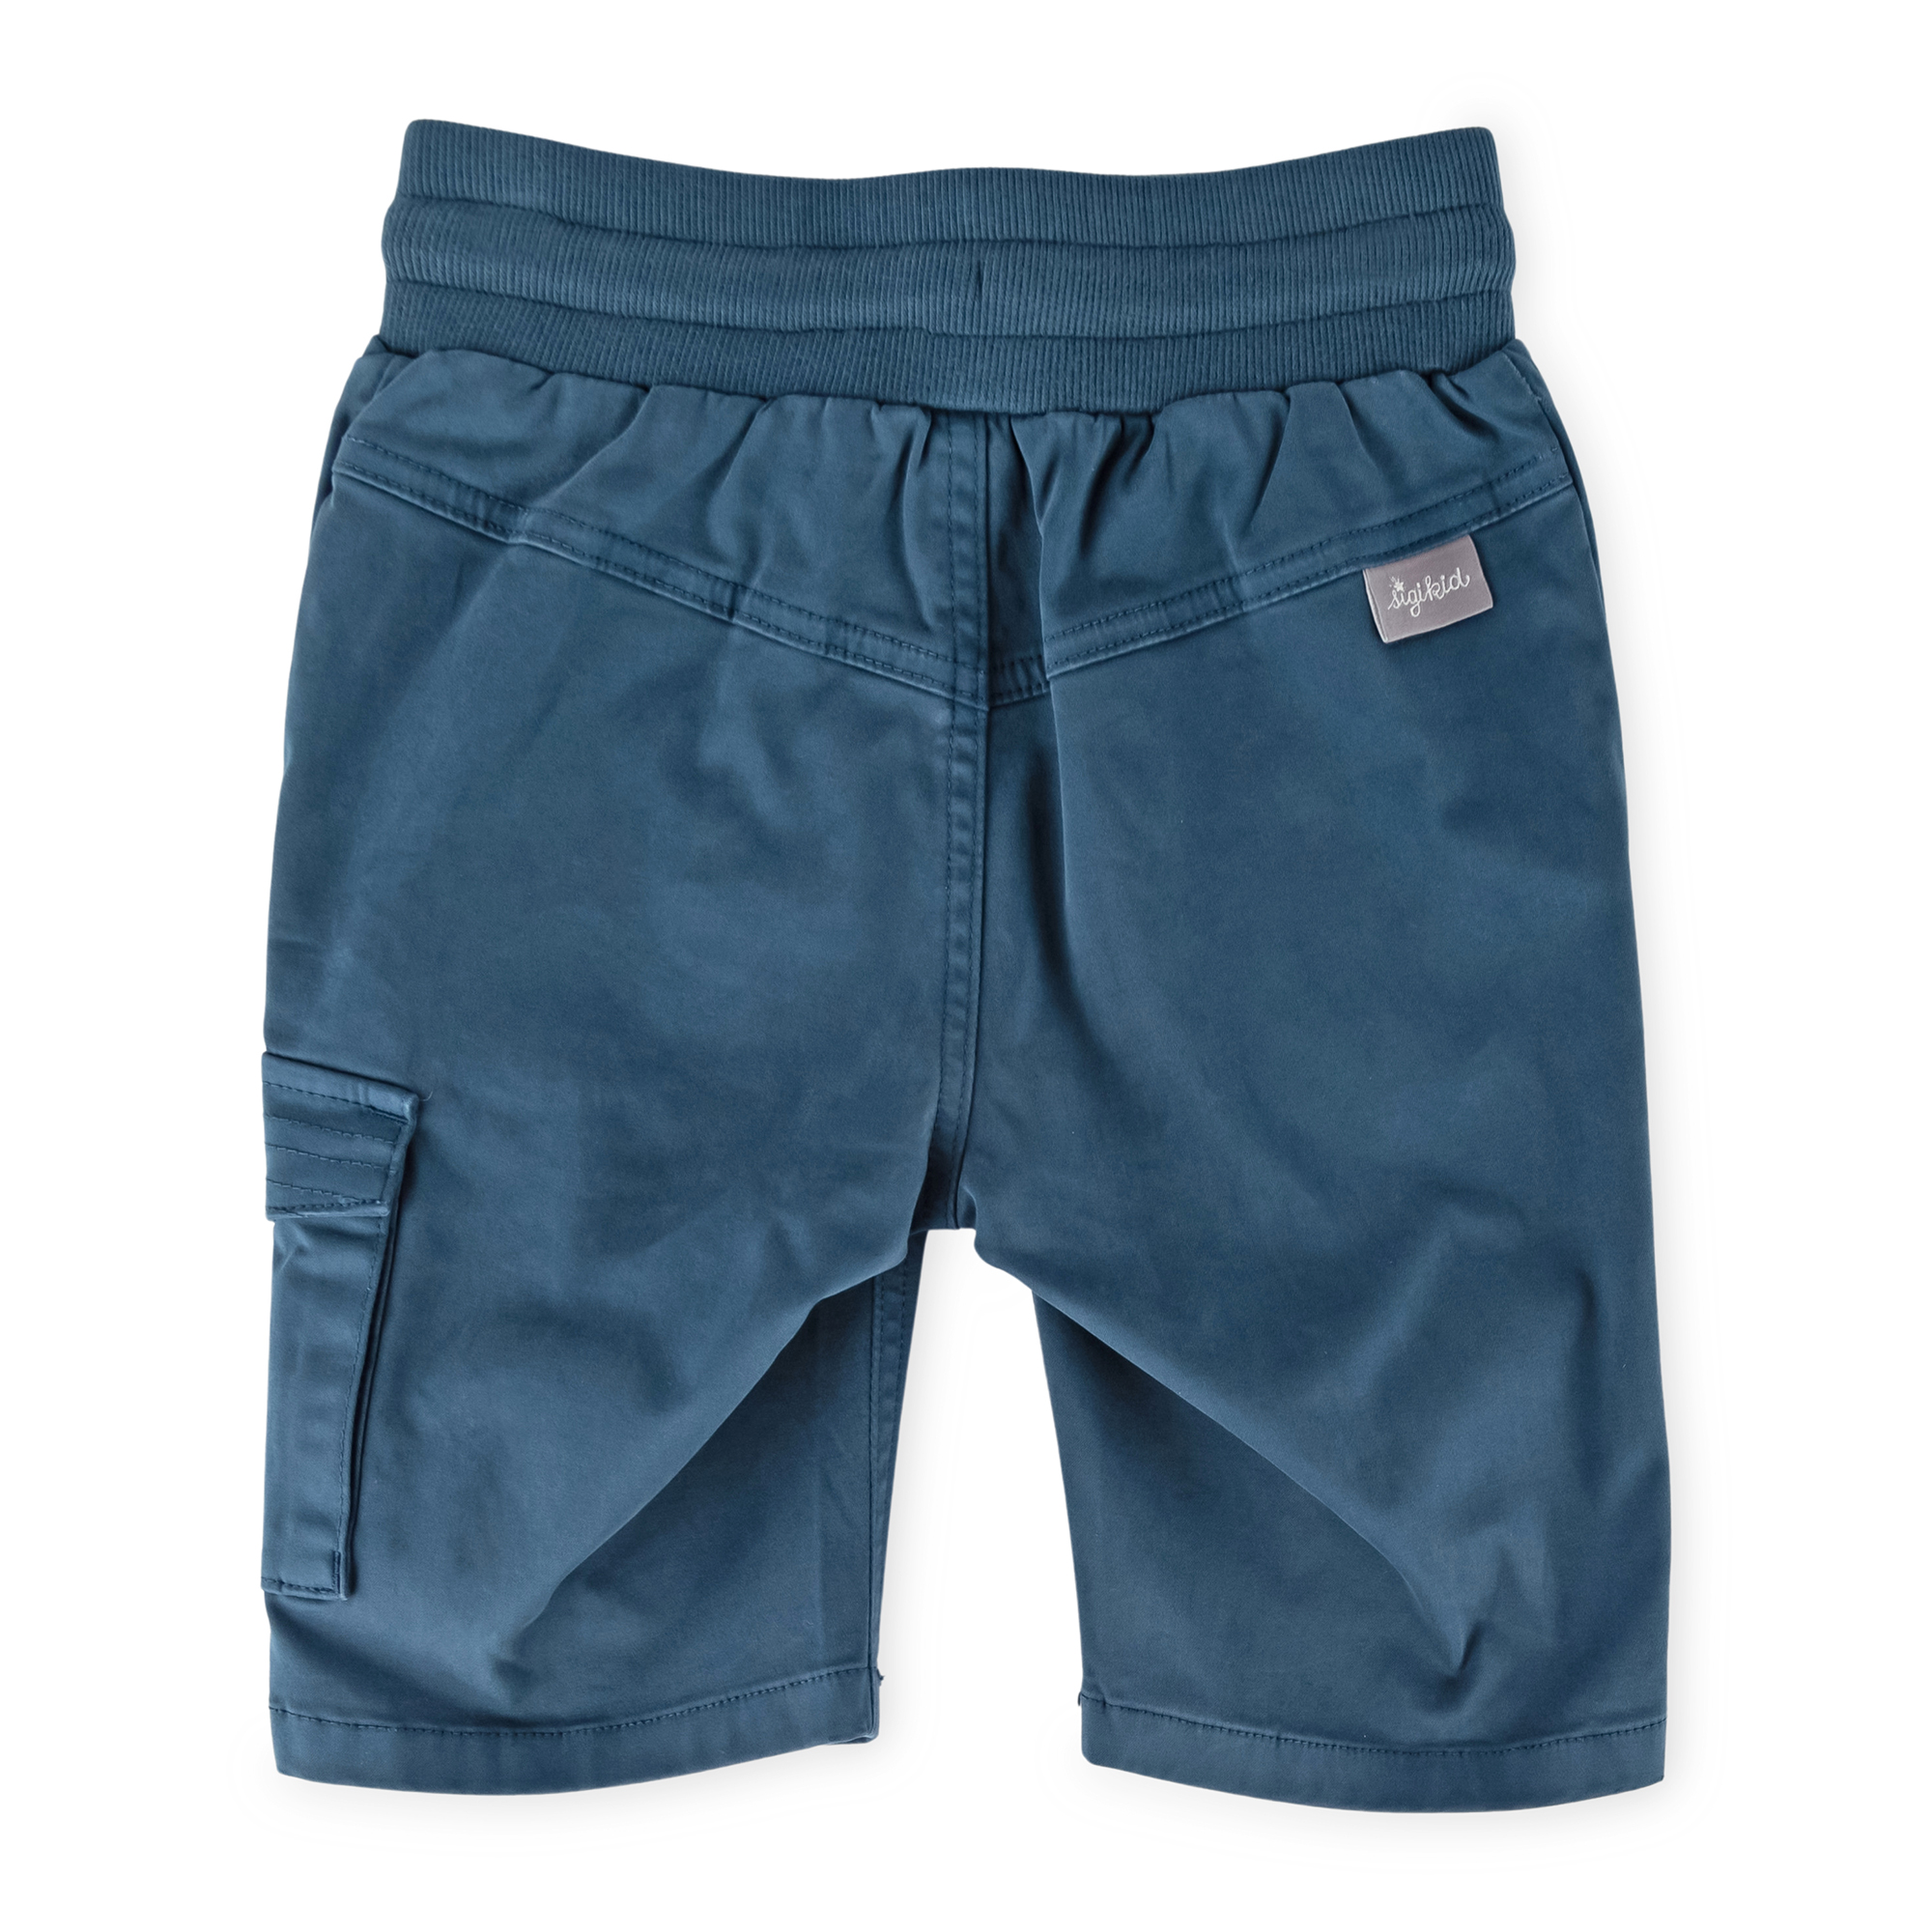 Children's cargo bermuda shorts dark teal blue